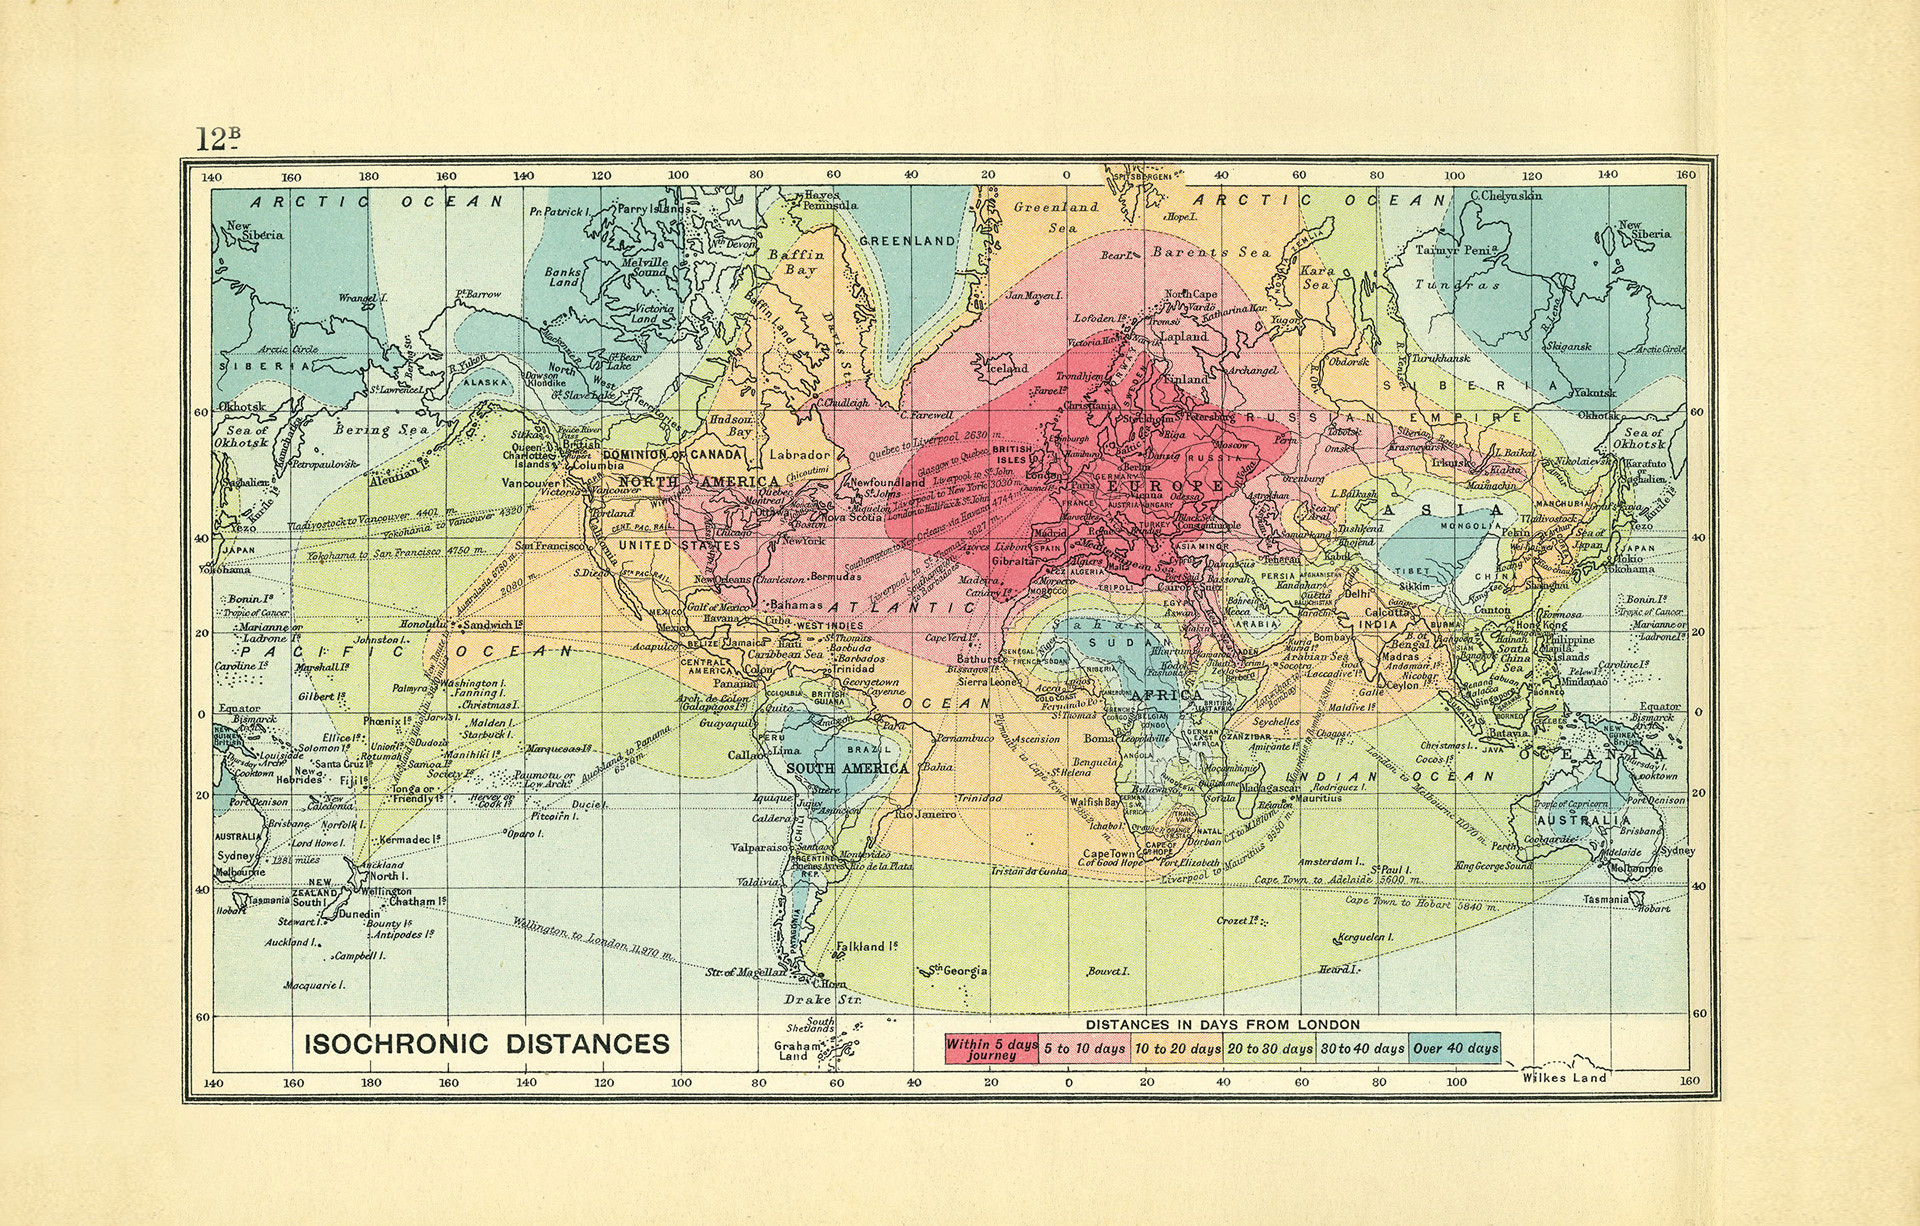 Figure 3: J. G. Bartholemew, Isochrone Map, 1914